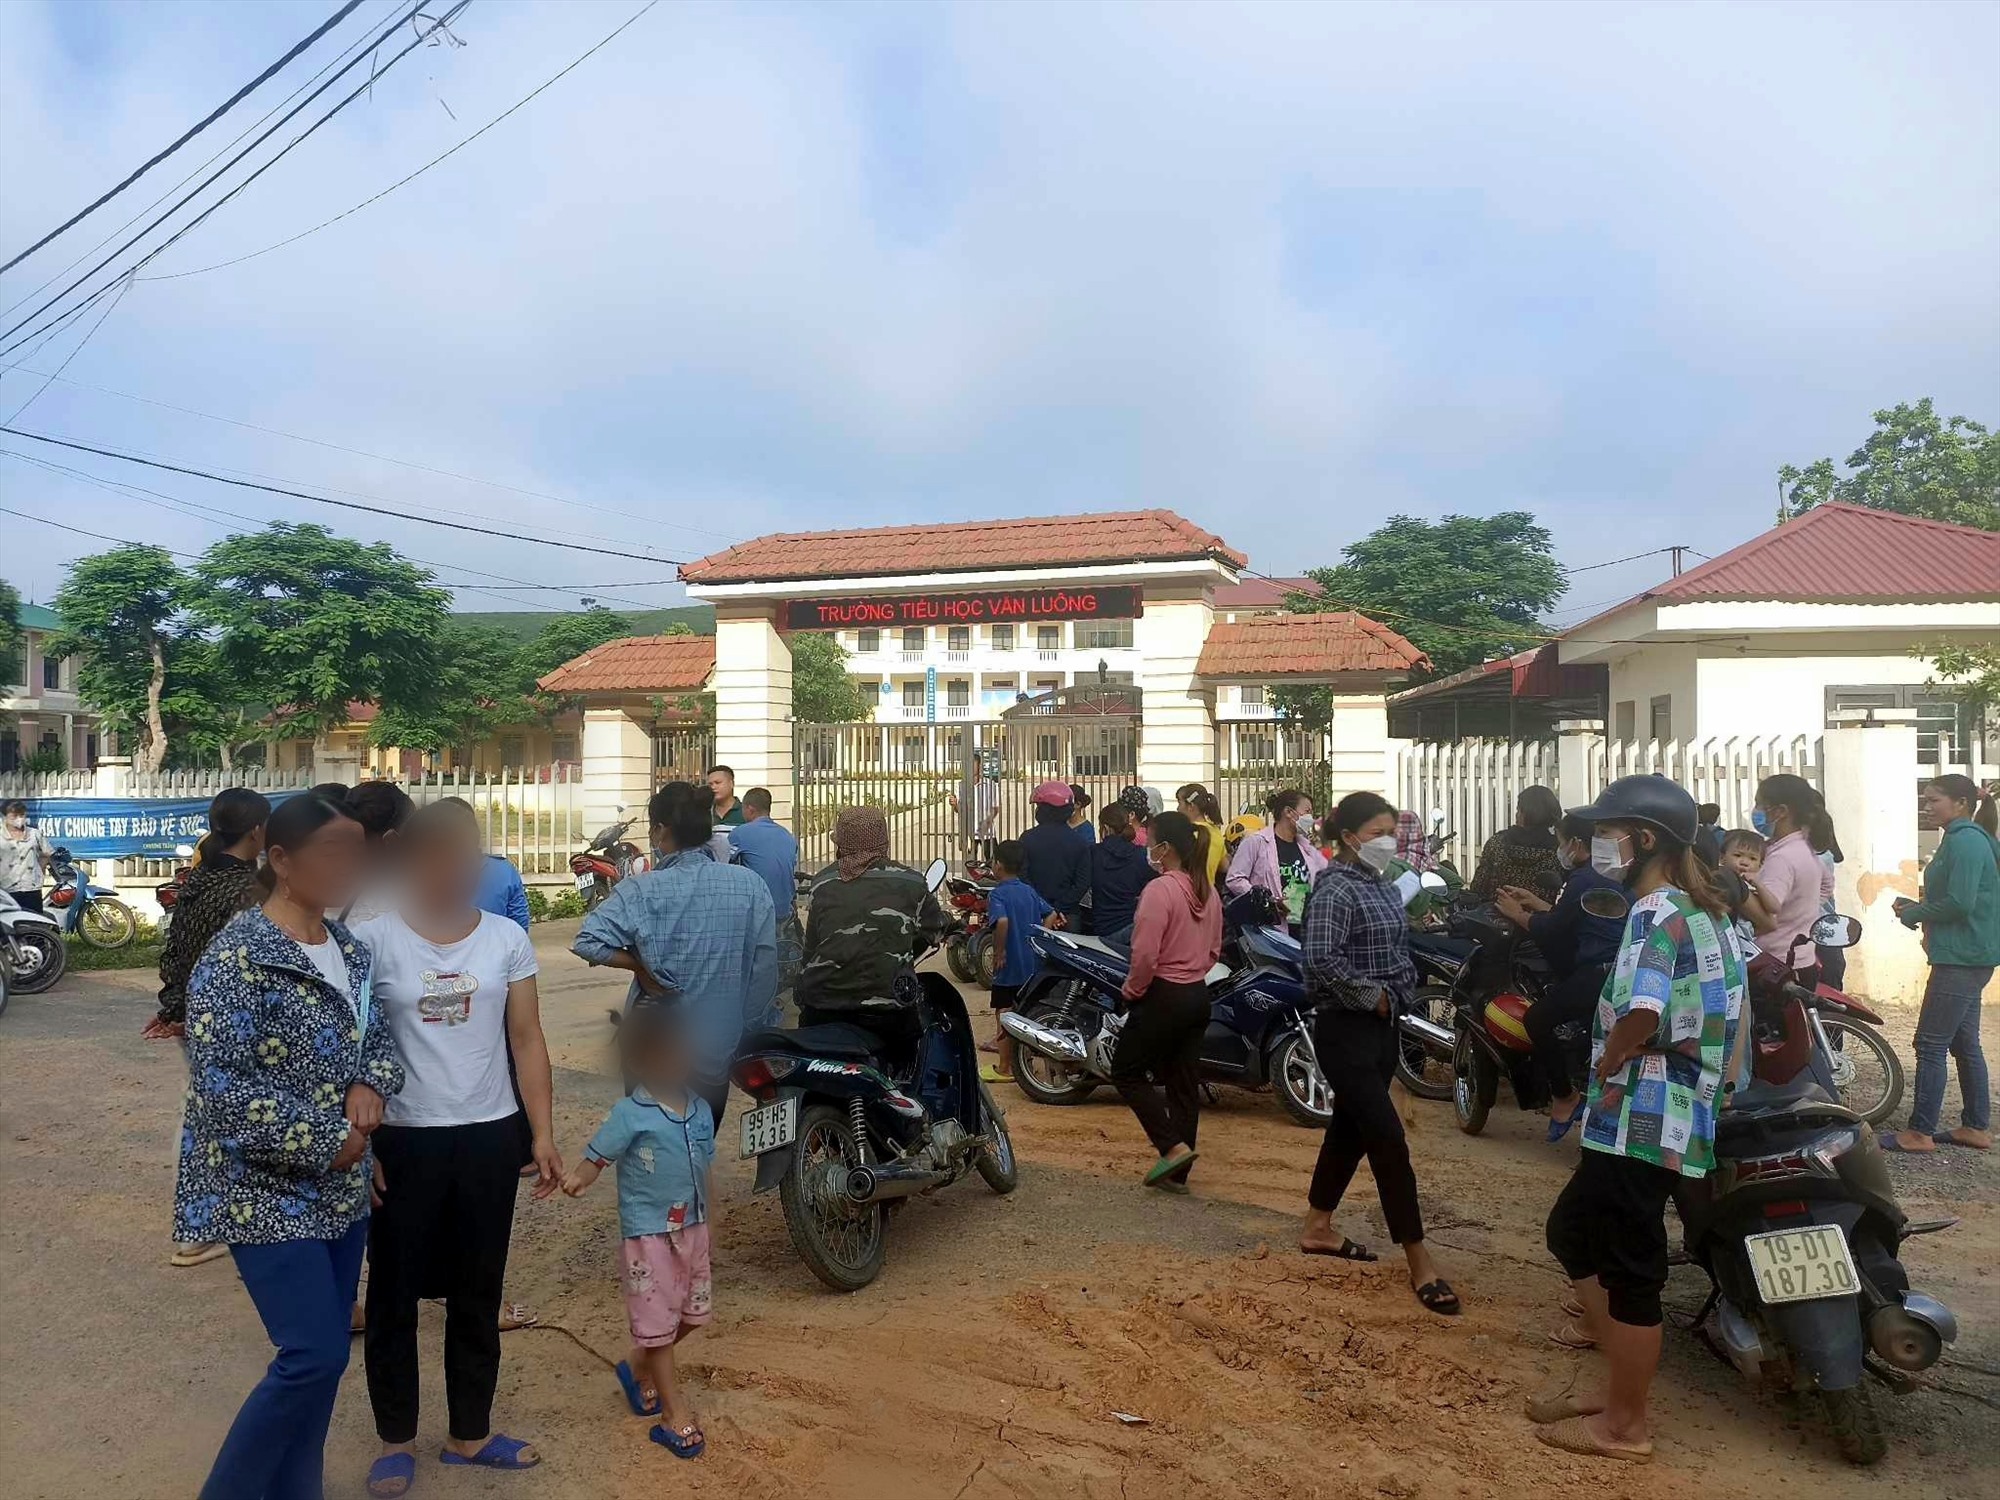 Trước đó ngày 21.7, hàng chục phụ huynh tụ tập trước cổng trường Tiểu học Văn Luông yêu cầu nhà trường làm rõ việc thu chi. Ảnh do người dân cung cấp.